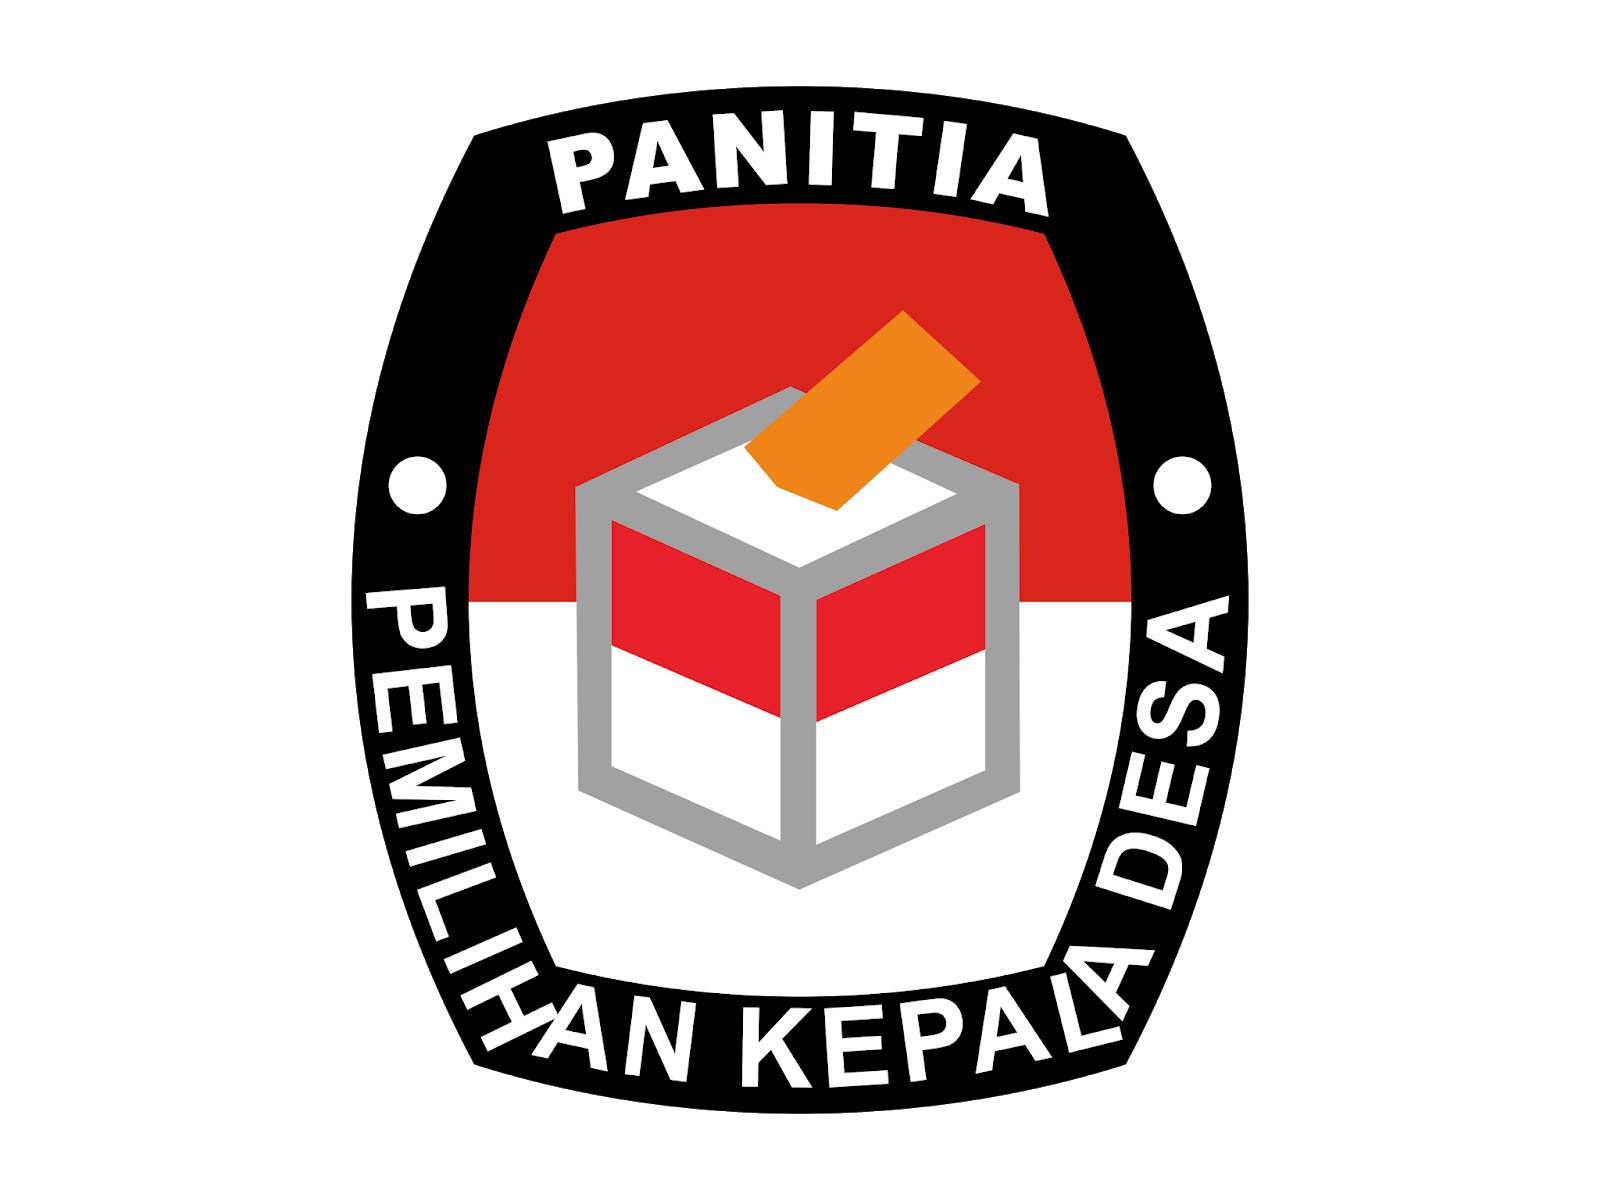 Download Logo Pilkades Serentak 2019 Png - KibrisPDR